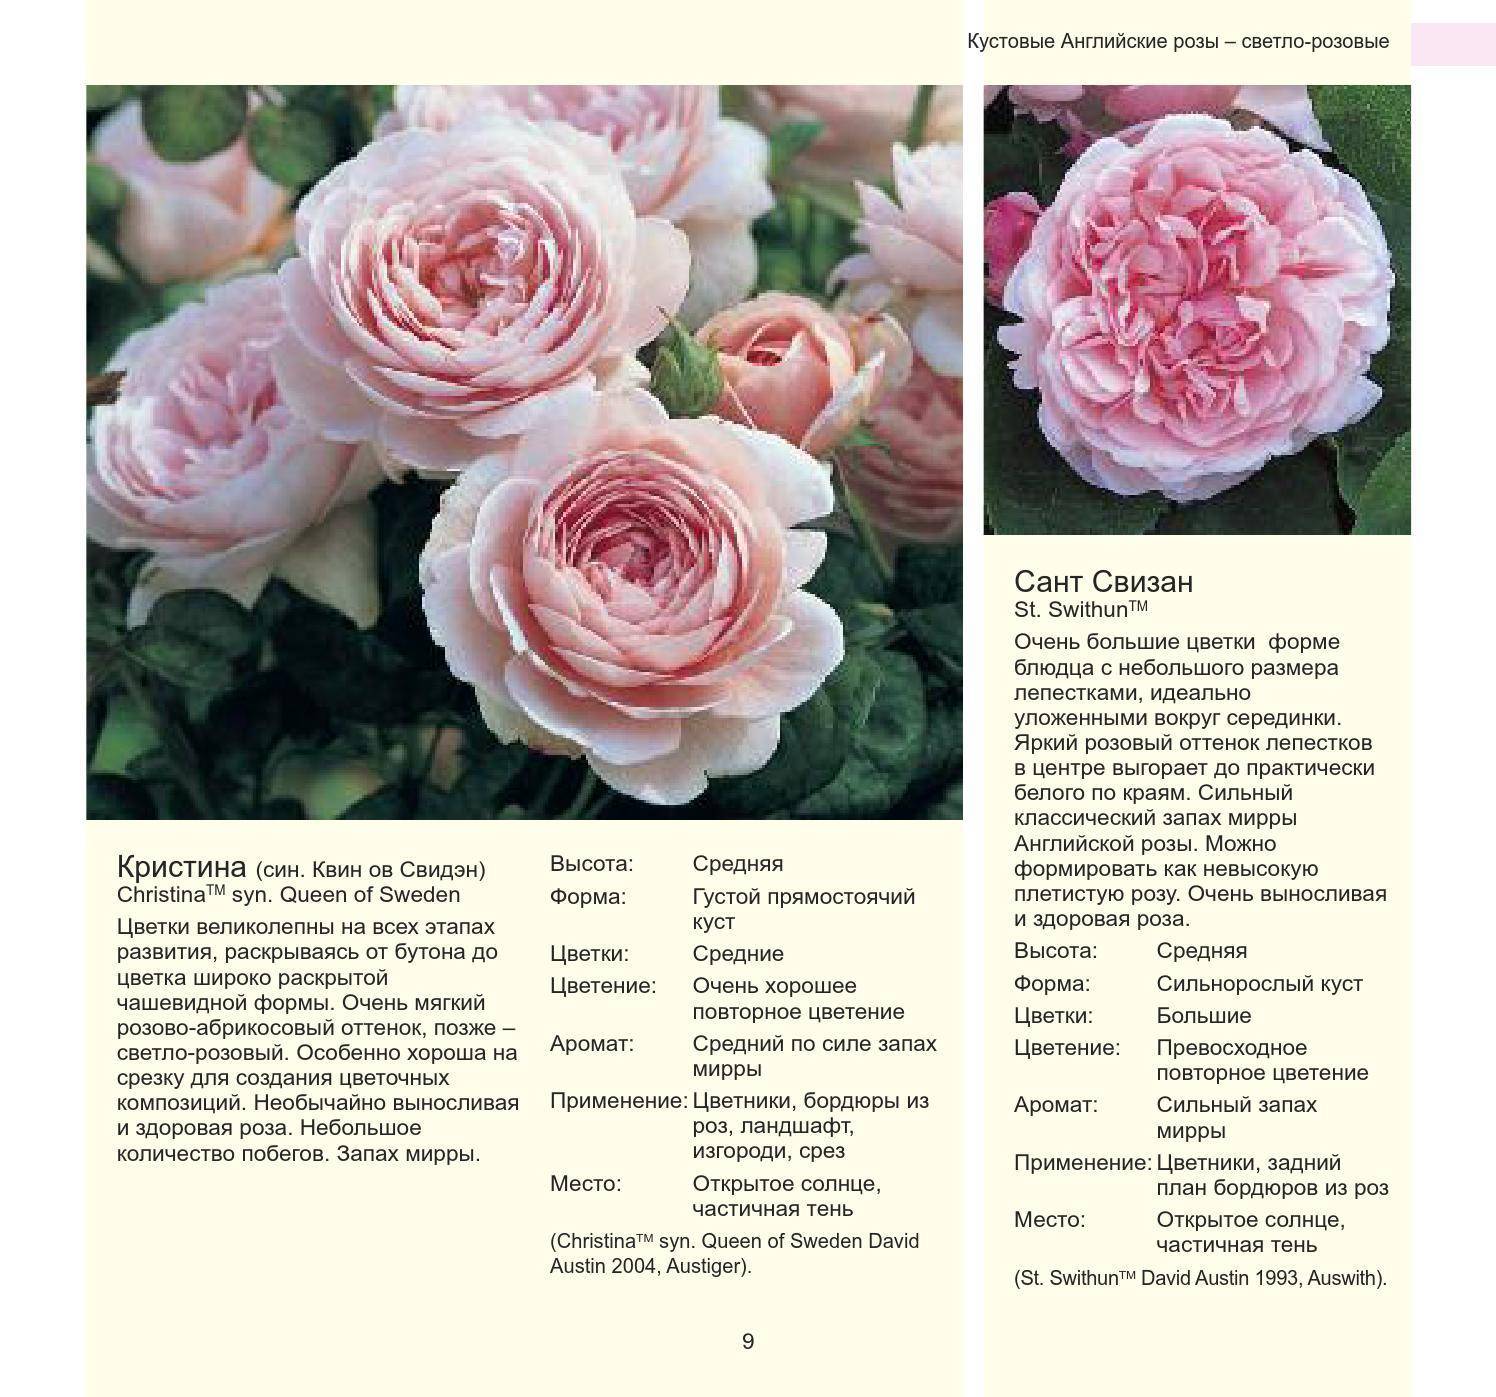 Роза принц: описание сорта и характеристики, правила посадки и выращивания